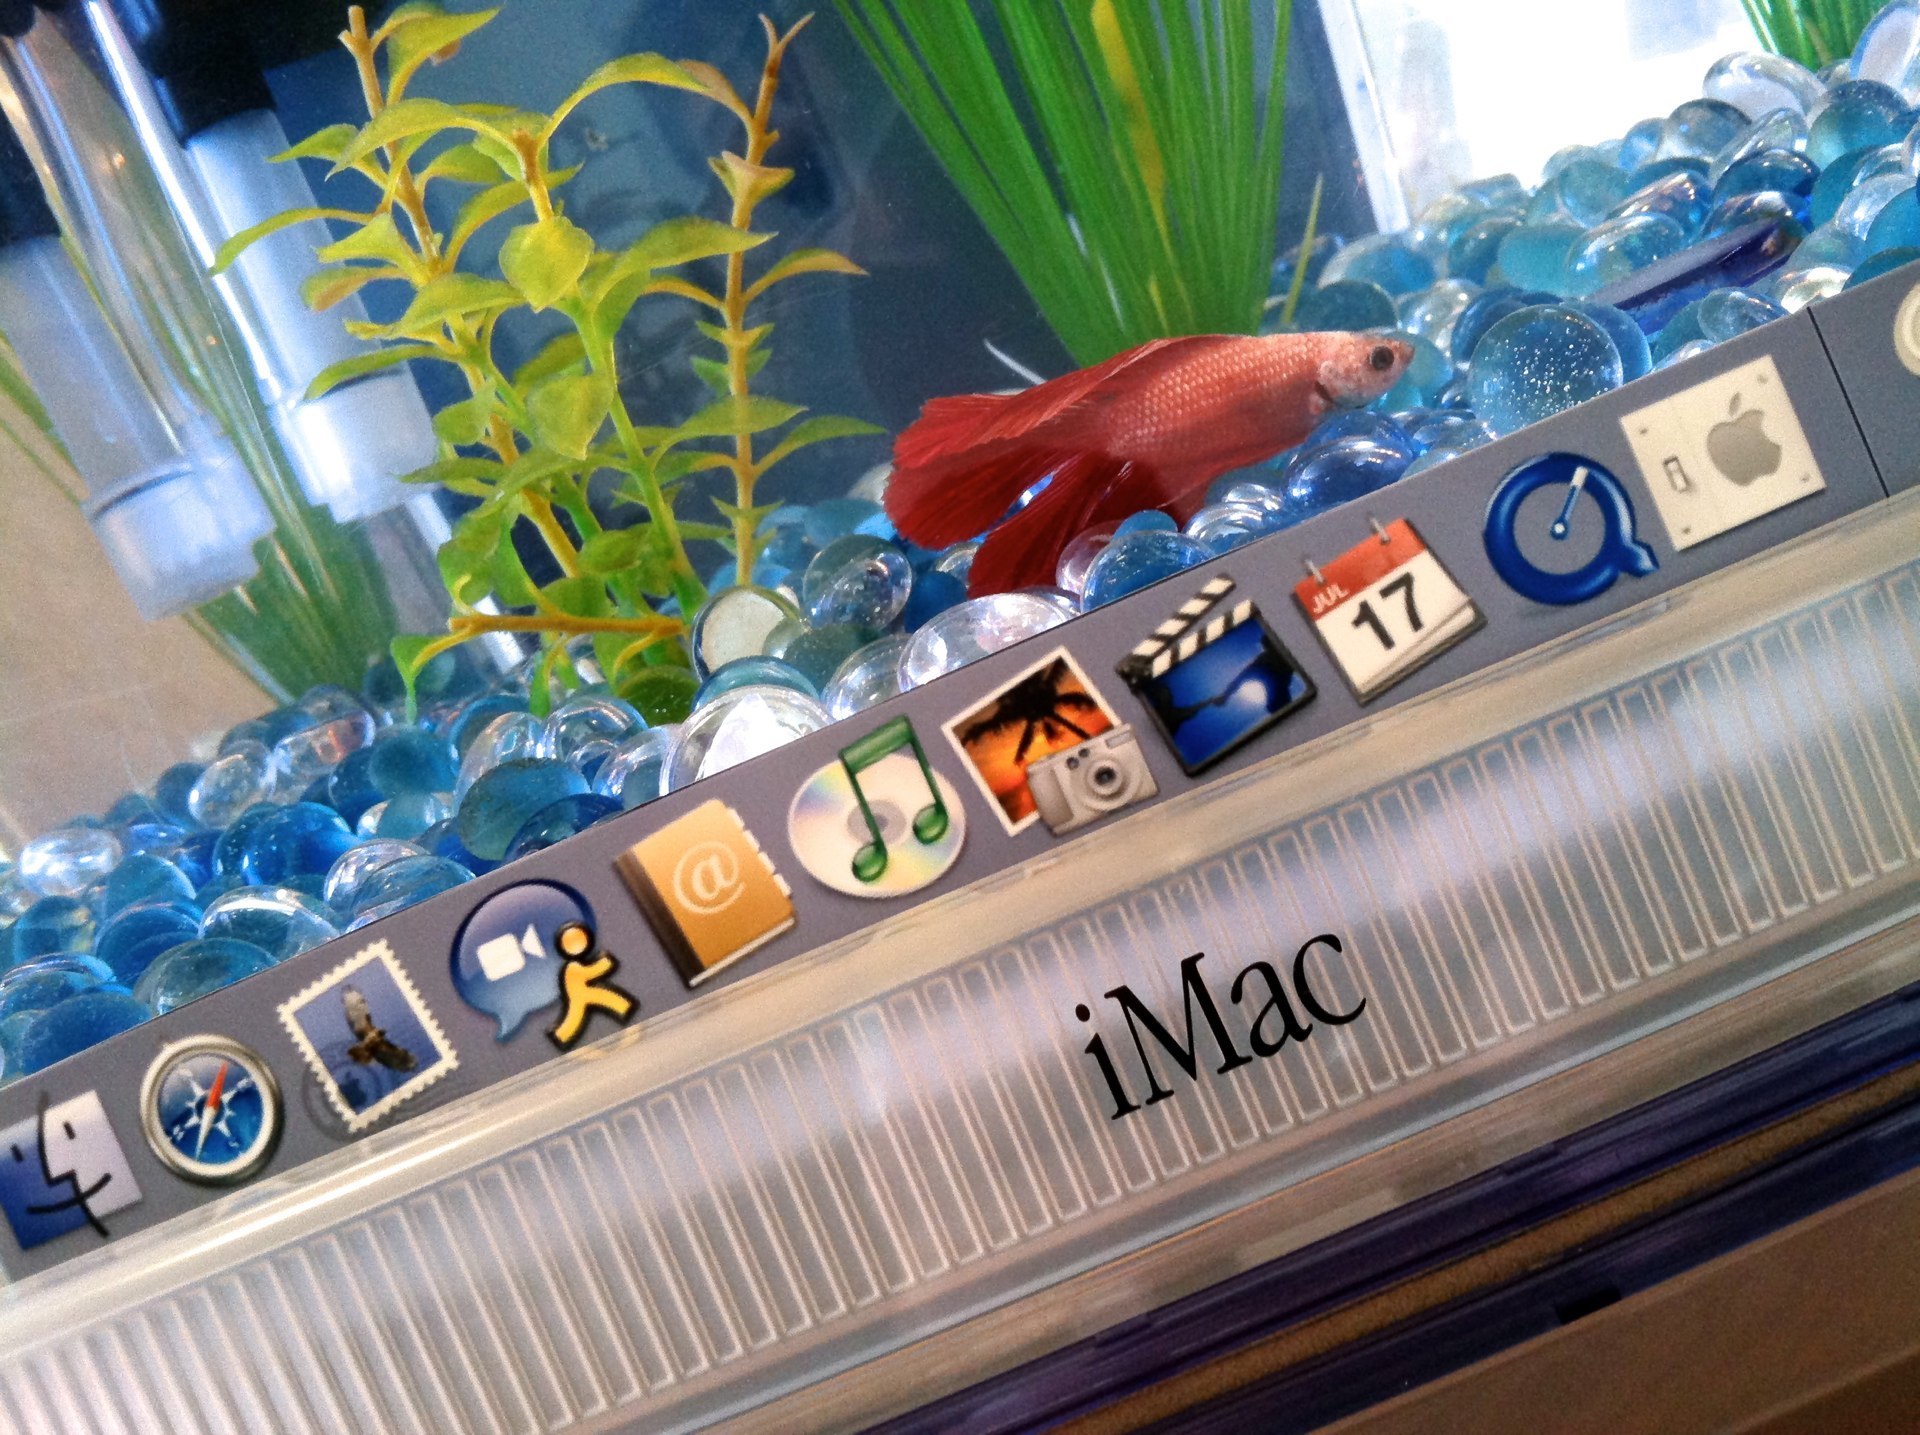 Bouw een compleet aquarium in je oude iMac